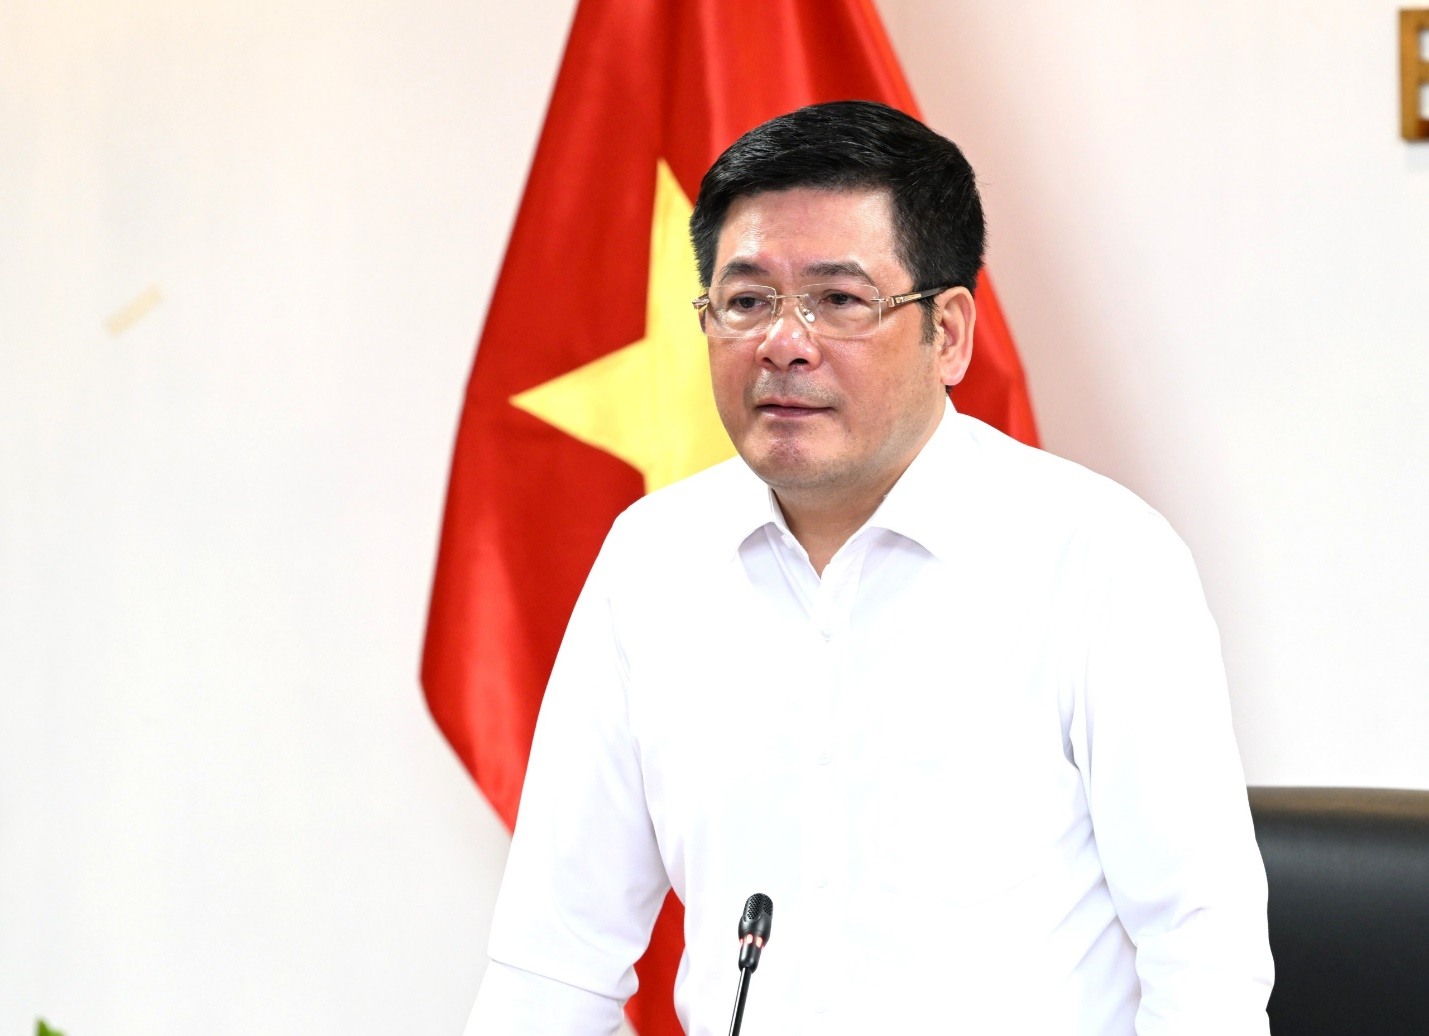 Bộ trưởng Nguyễn Hồng Diên nhấn mạnh đường dây 500 kv mạch 3 có vai trò đặc biệt quan trọng trong việc kết nối lưới điện liên miền, góp phần bảo đảm cung ứng điện cho miền Bắc, đảm bảo an ninh năng lượng